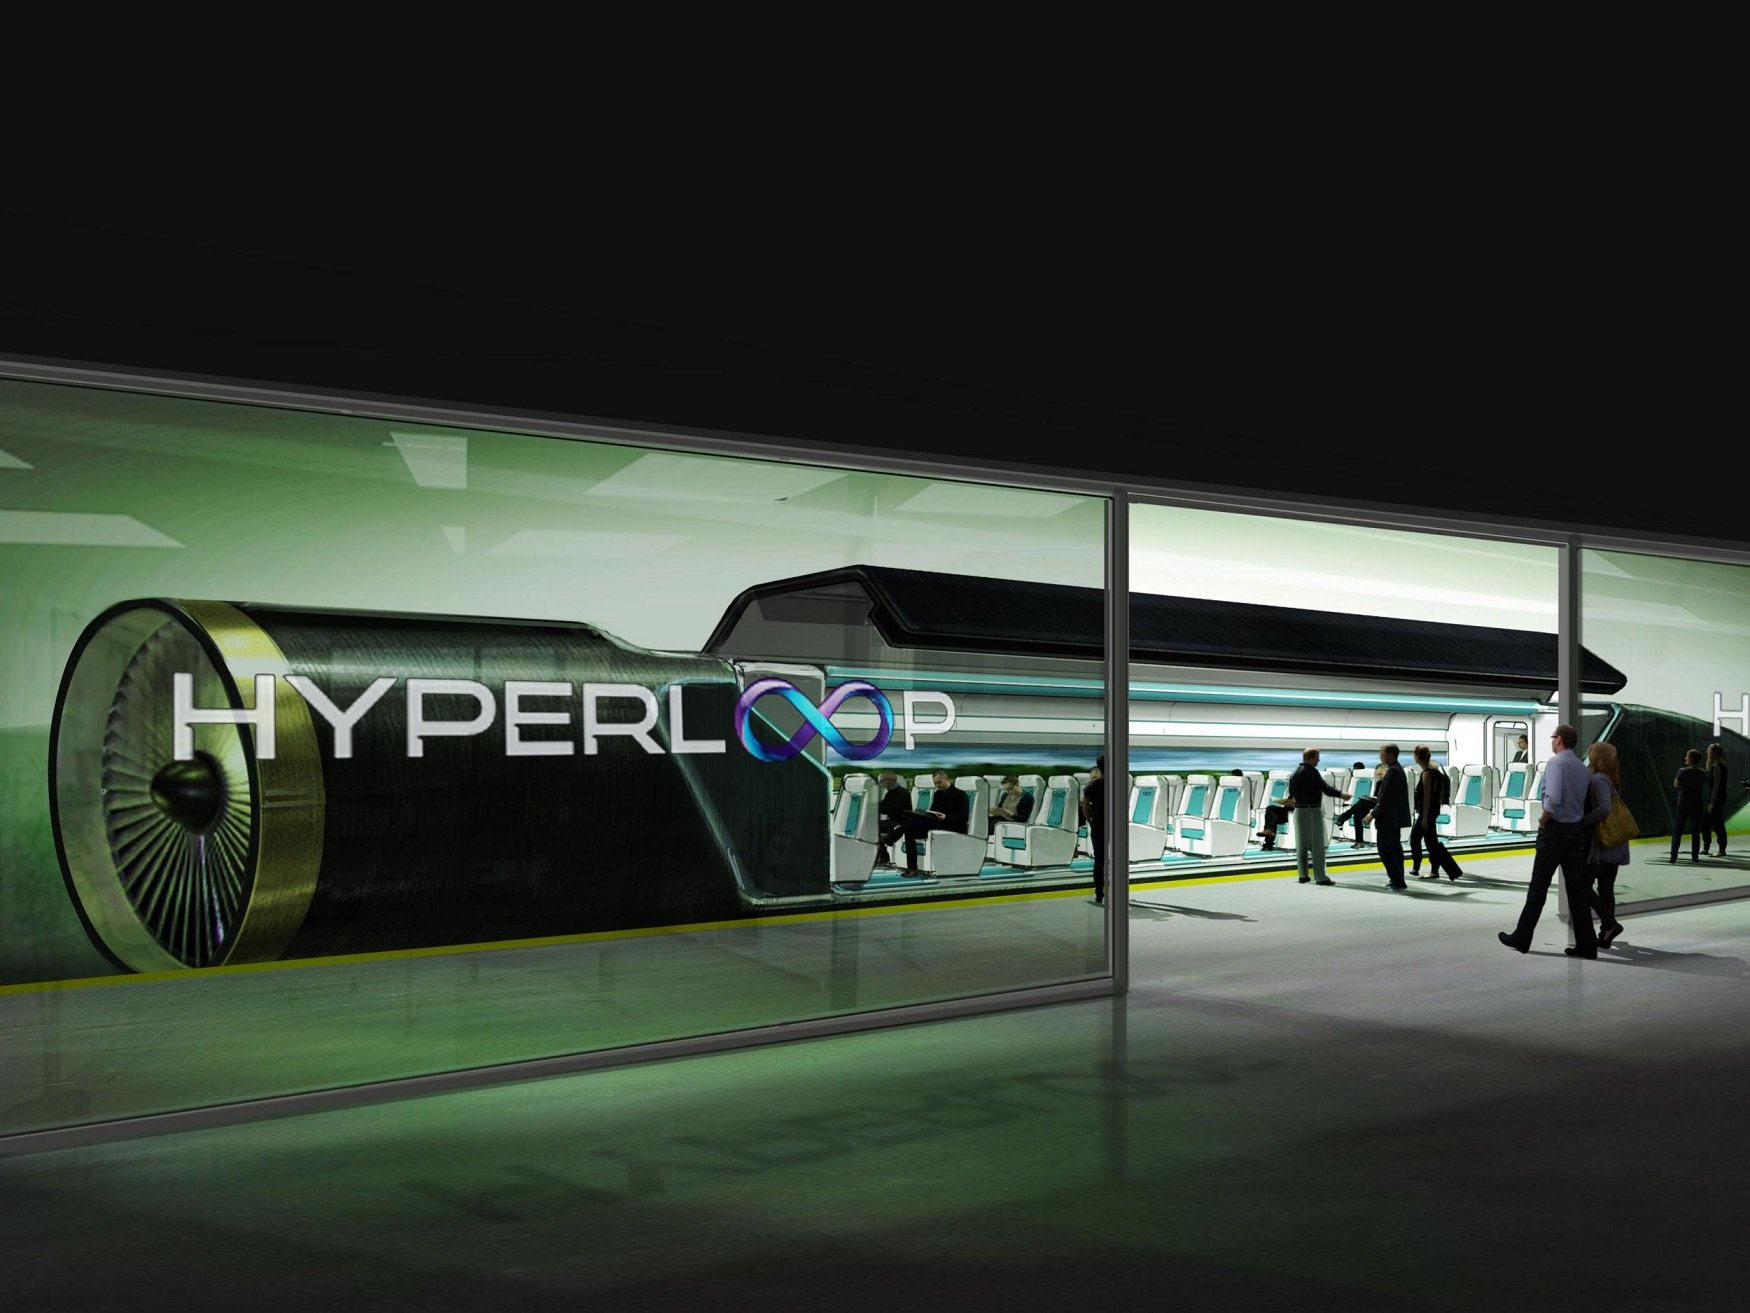 Прототип Hyperloop можно теперь испытать в VR